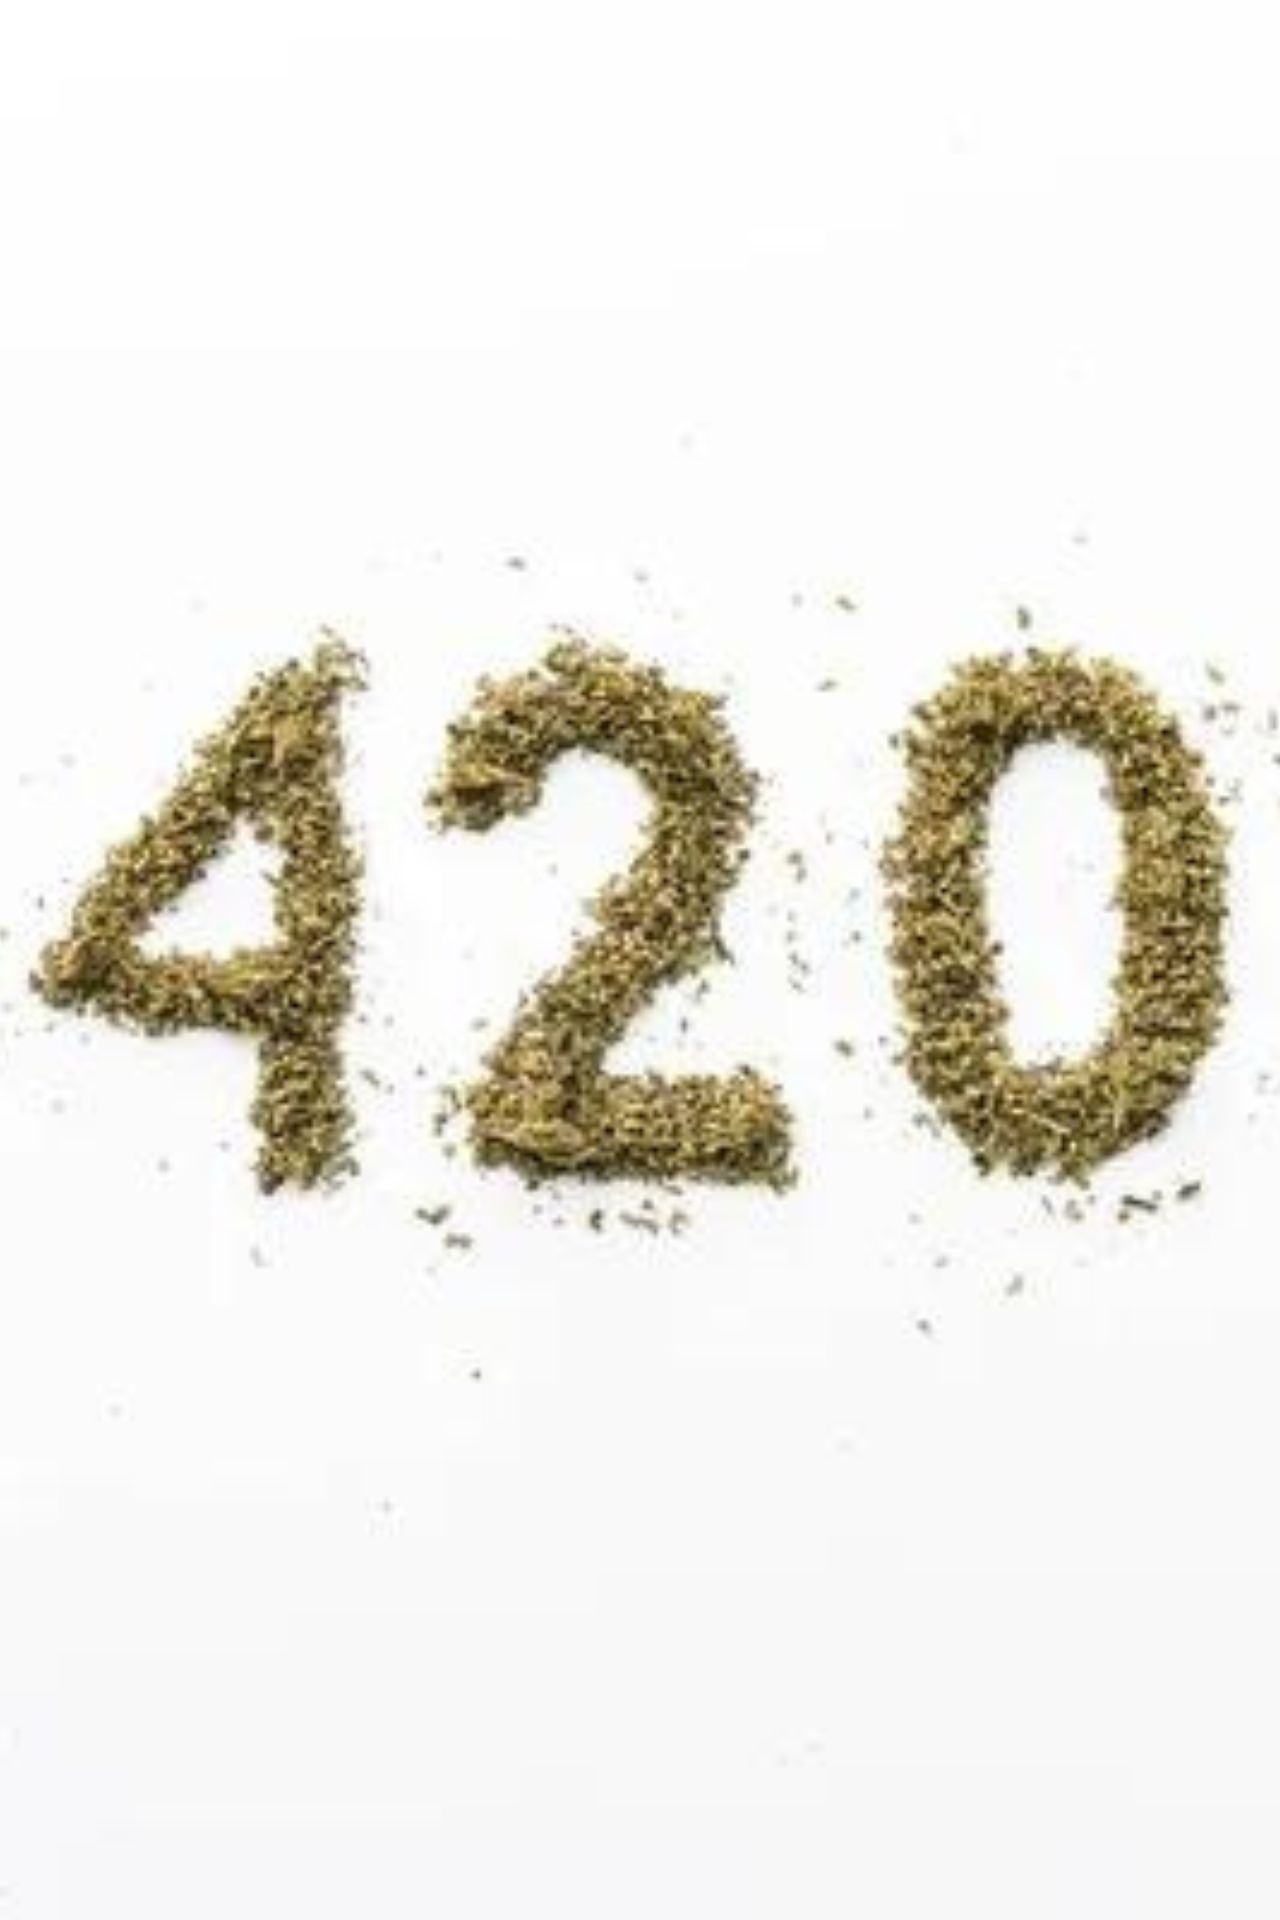 धोखेबाज लोगों को 420 ही क्यों कहते हैं, सोचा है कभी?